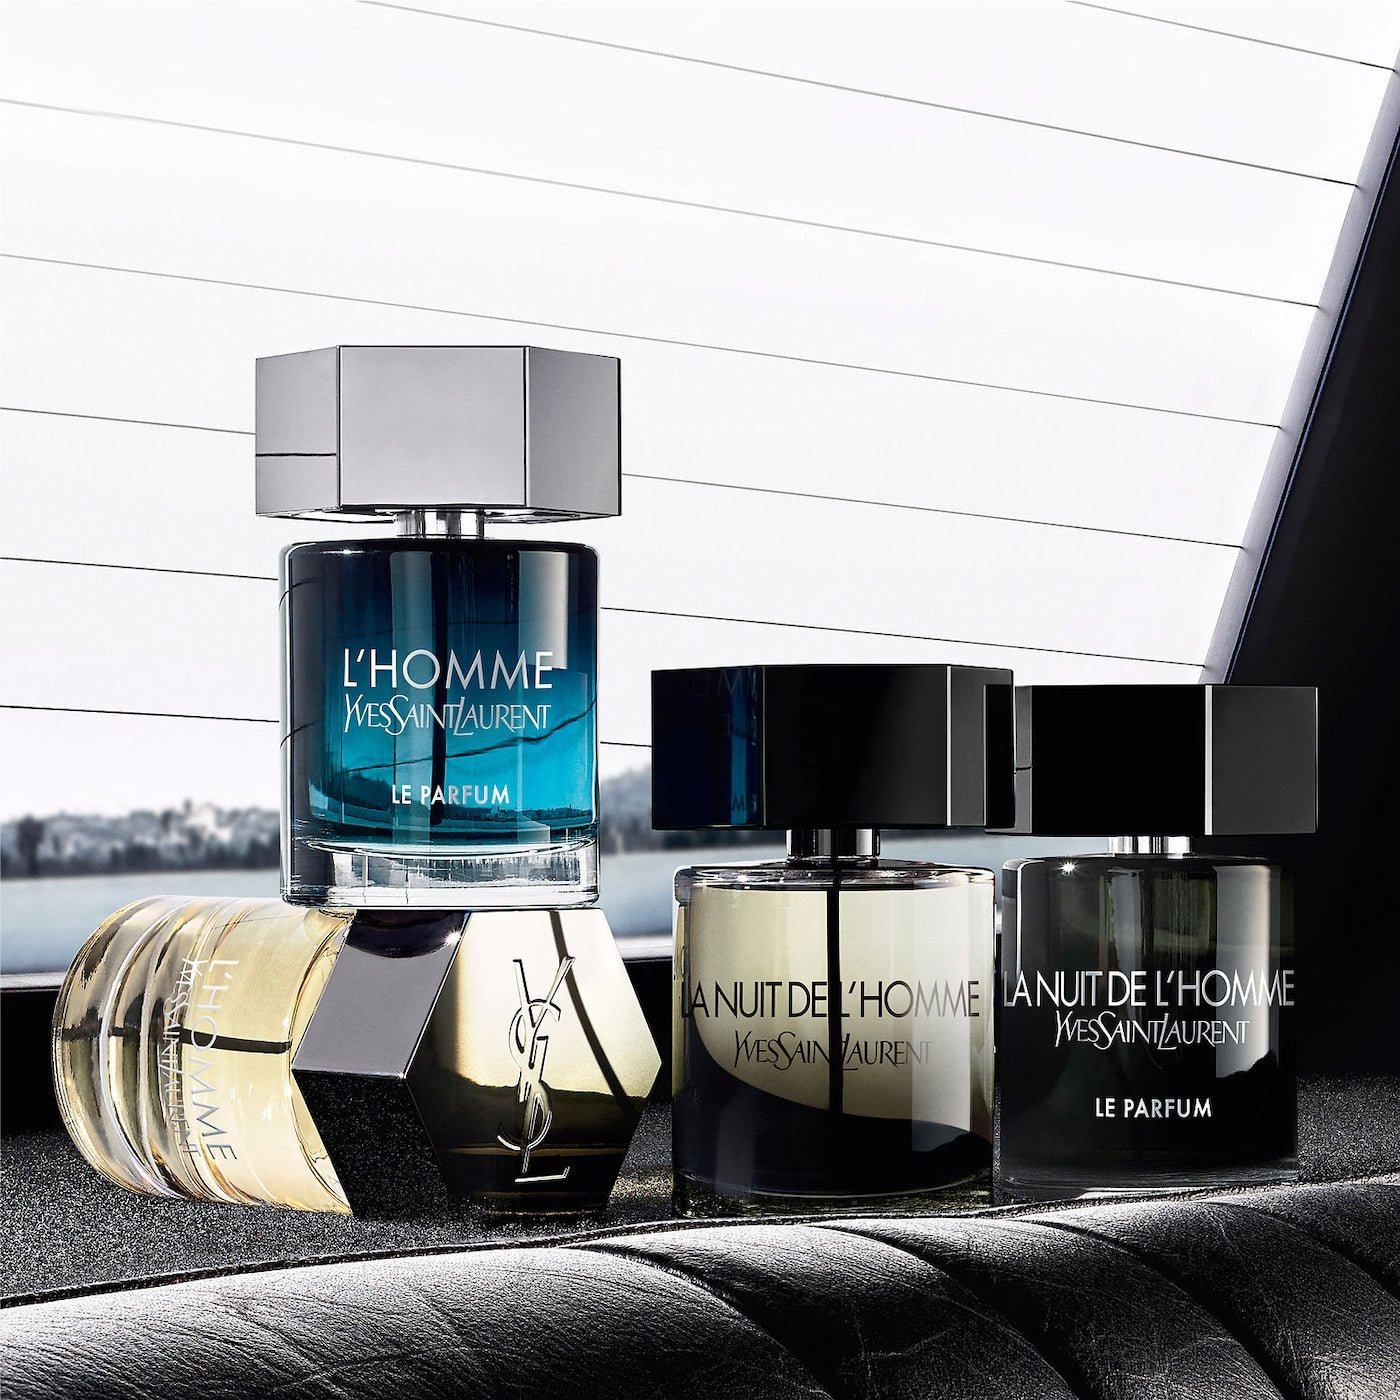 Yves Saint Laurent L'Homme EDT | My Perfume Shop Australia